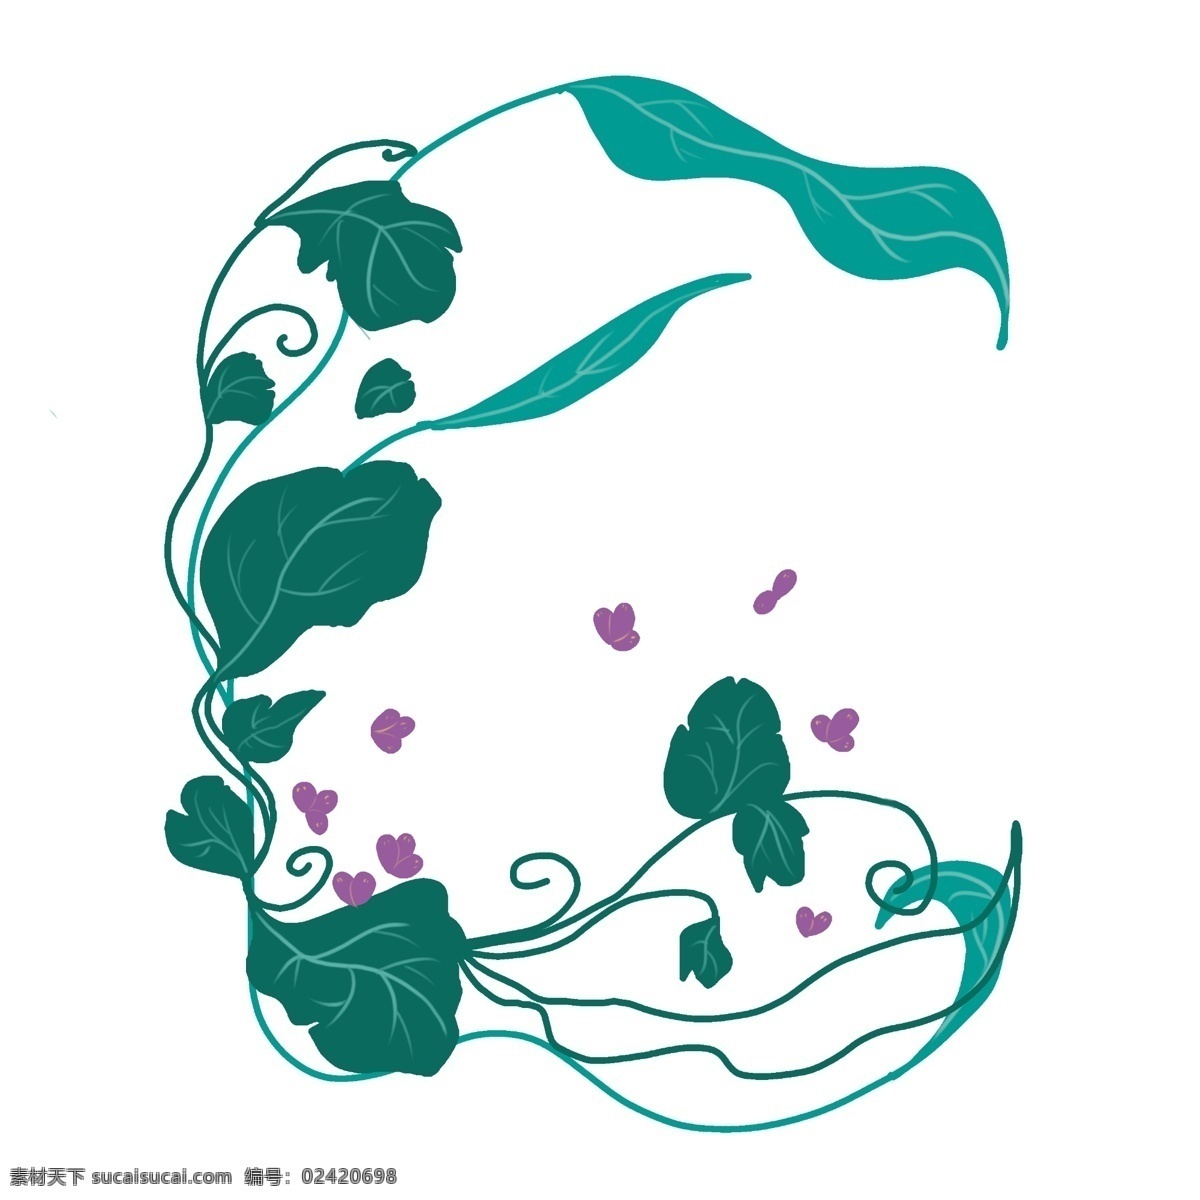 紫色 花 藤 卡通 插画 紫色的花朵 绿色的花藤 卡通插画 花藤插画 藤蔓插画 花枝 花朵 鲜花 花束